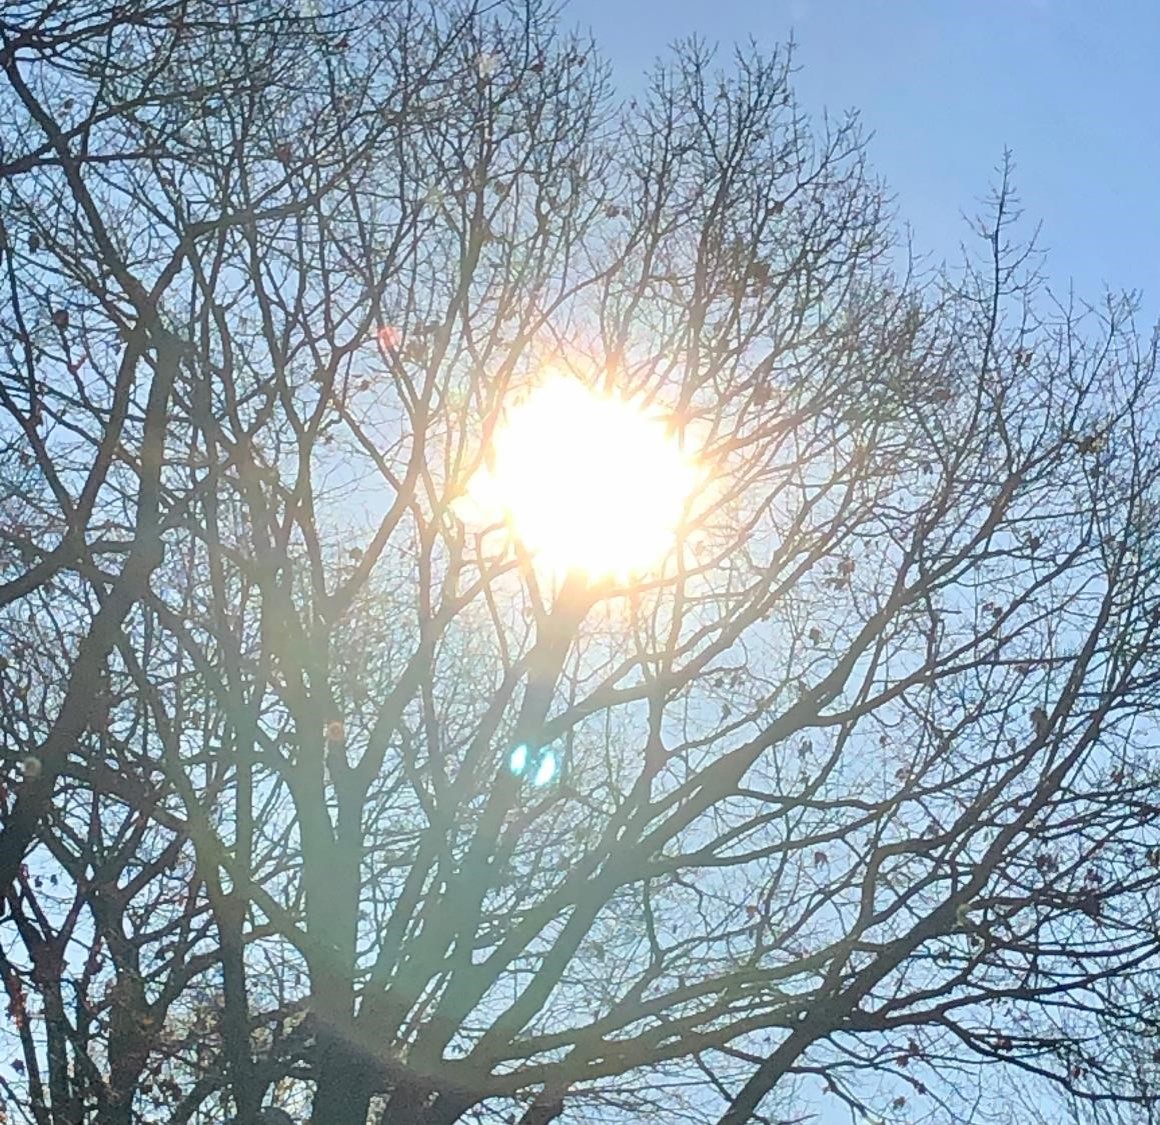 Soleil à travers les branches (crédit photo Phrenssynnes)